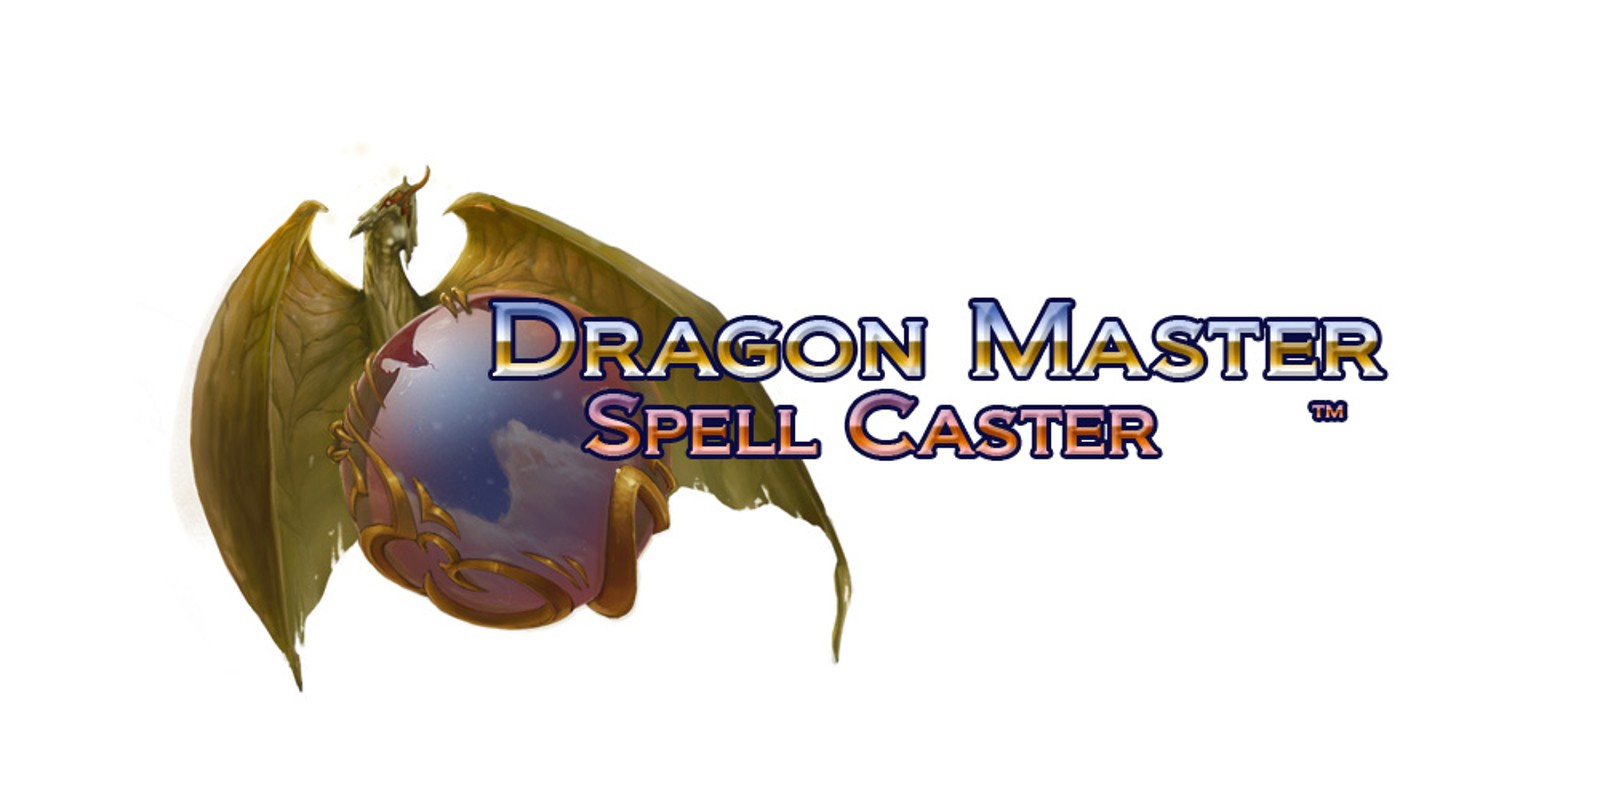 Dragon Master Spell Caster™